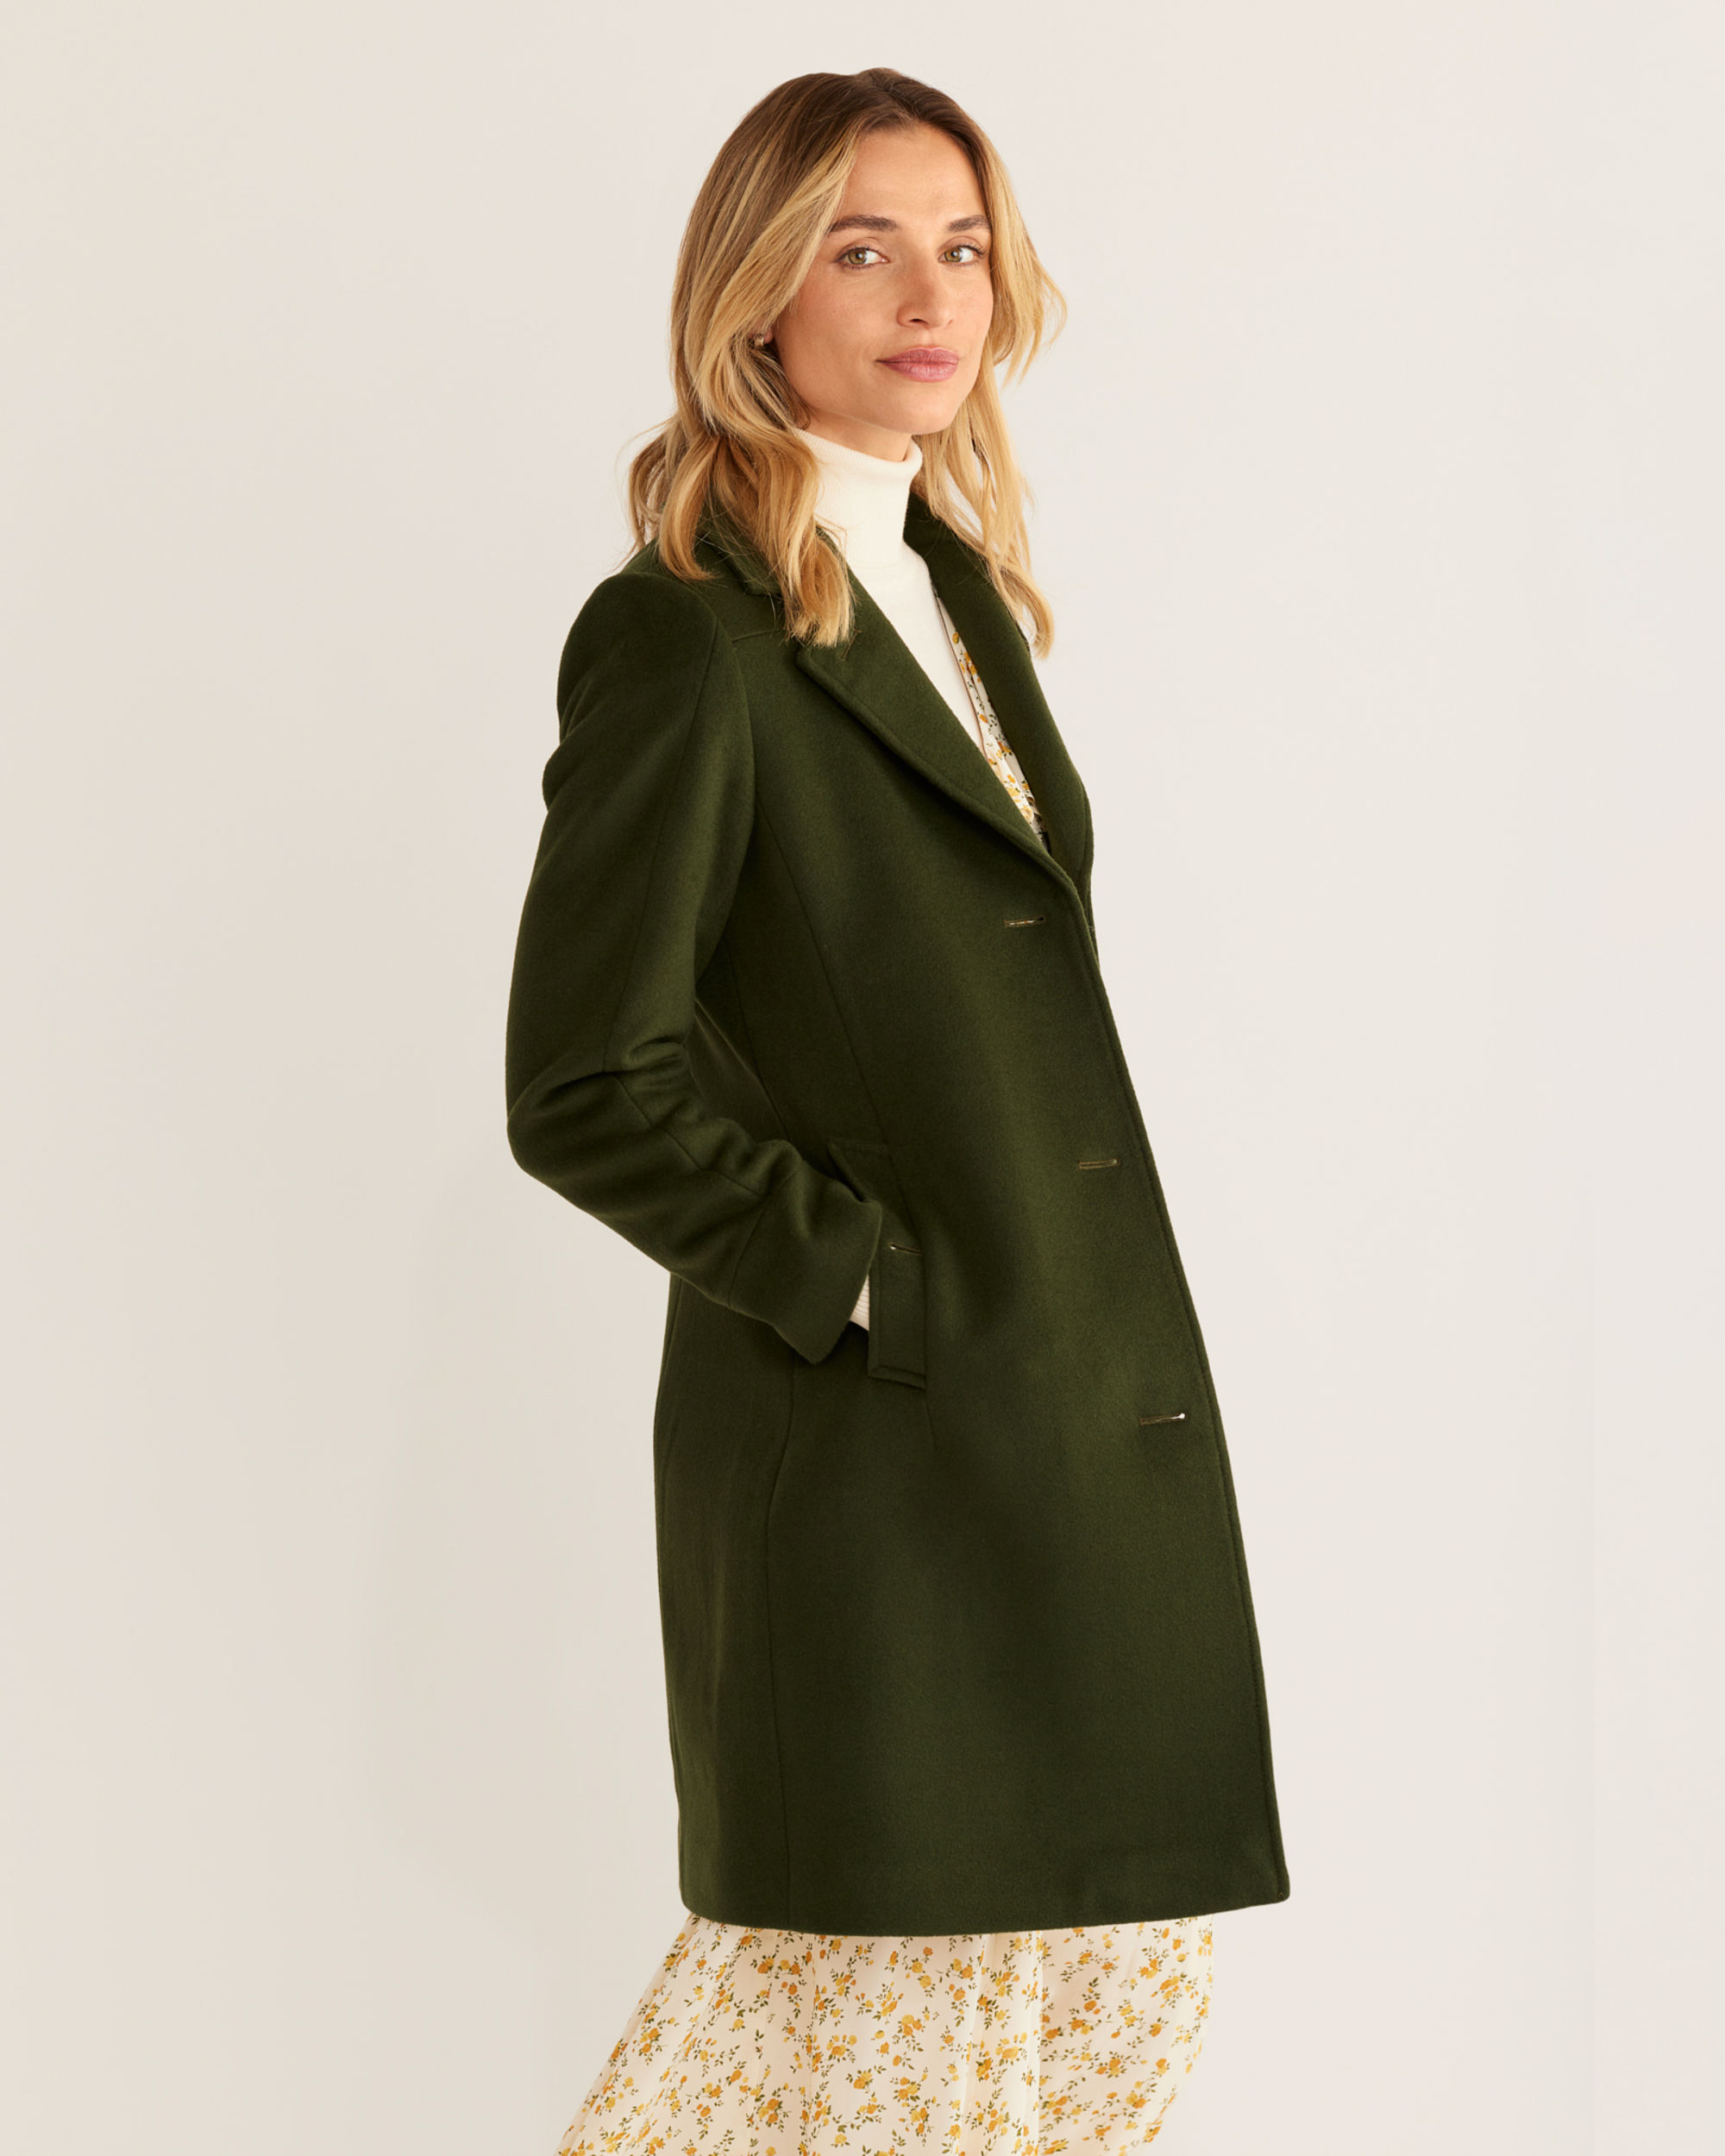 Stay Warm & Stylish in the Women's Walker Wool Coat | Pendleton